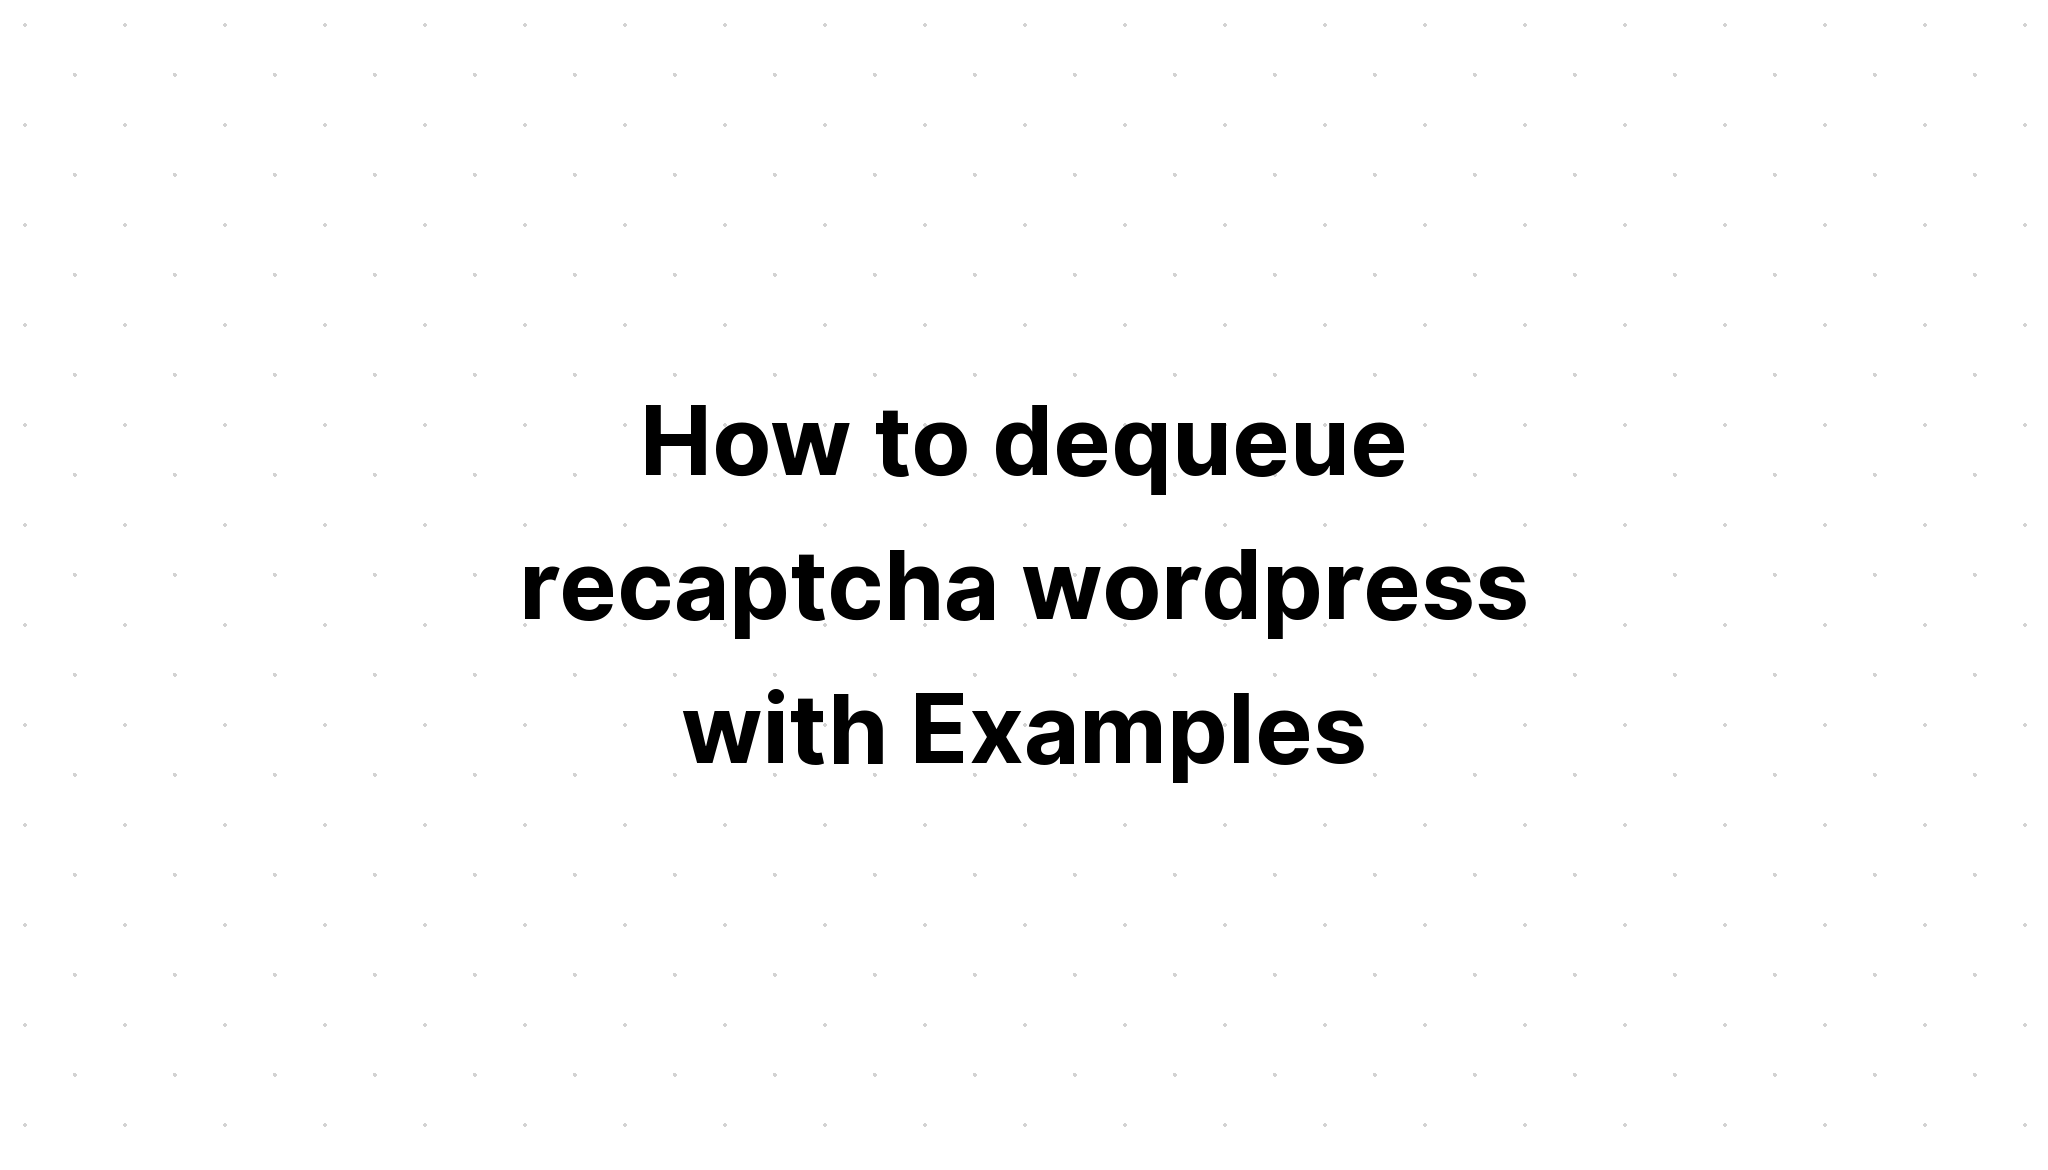 Cách dequeue recaptcha wordpress với các ví dụ